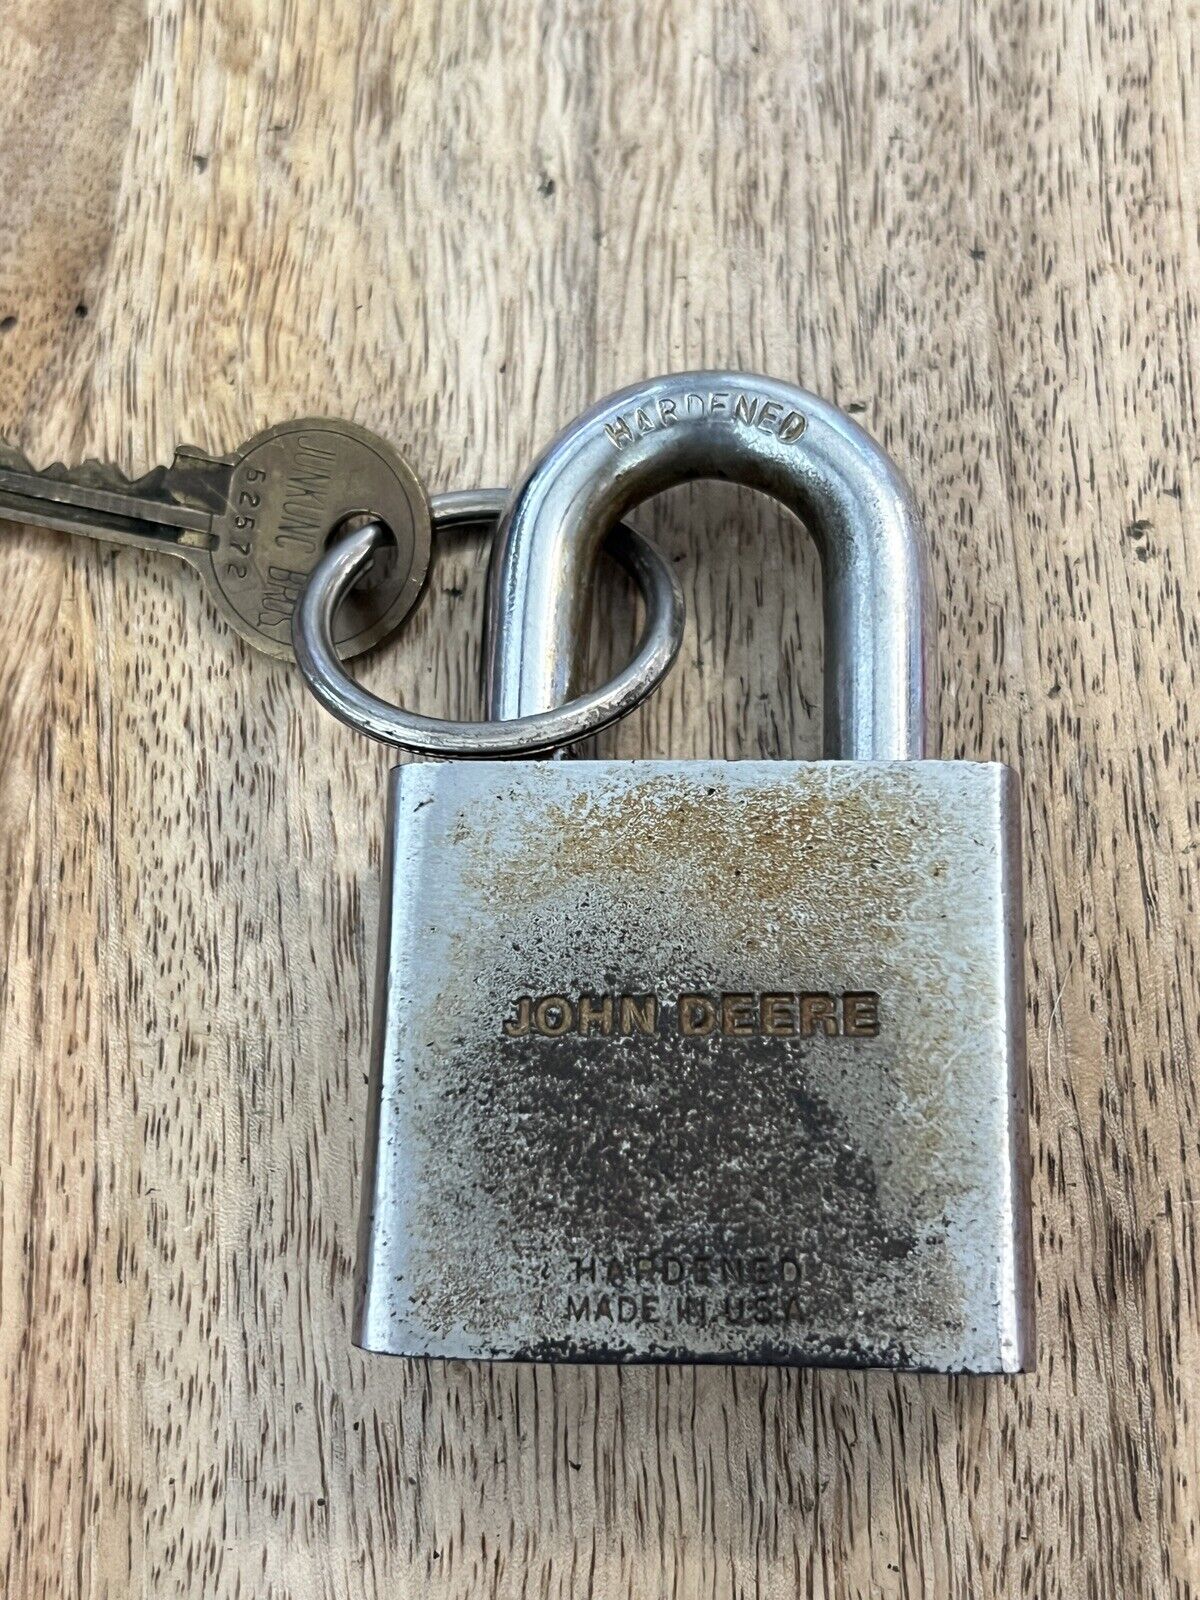 Vintage Old John Deere Junkunc Padlock With Key Lock